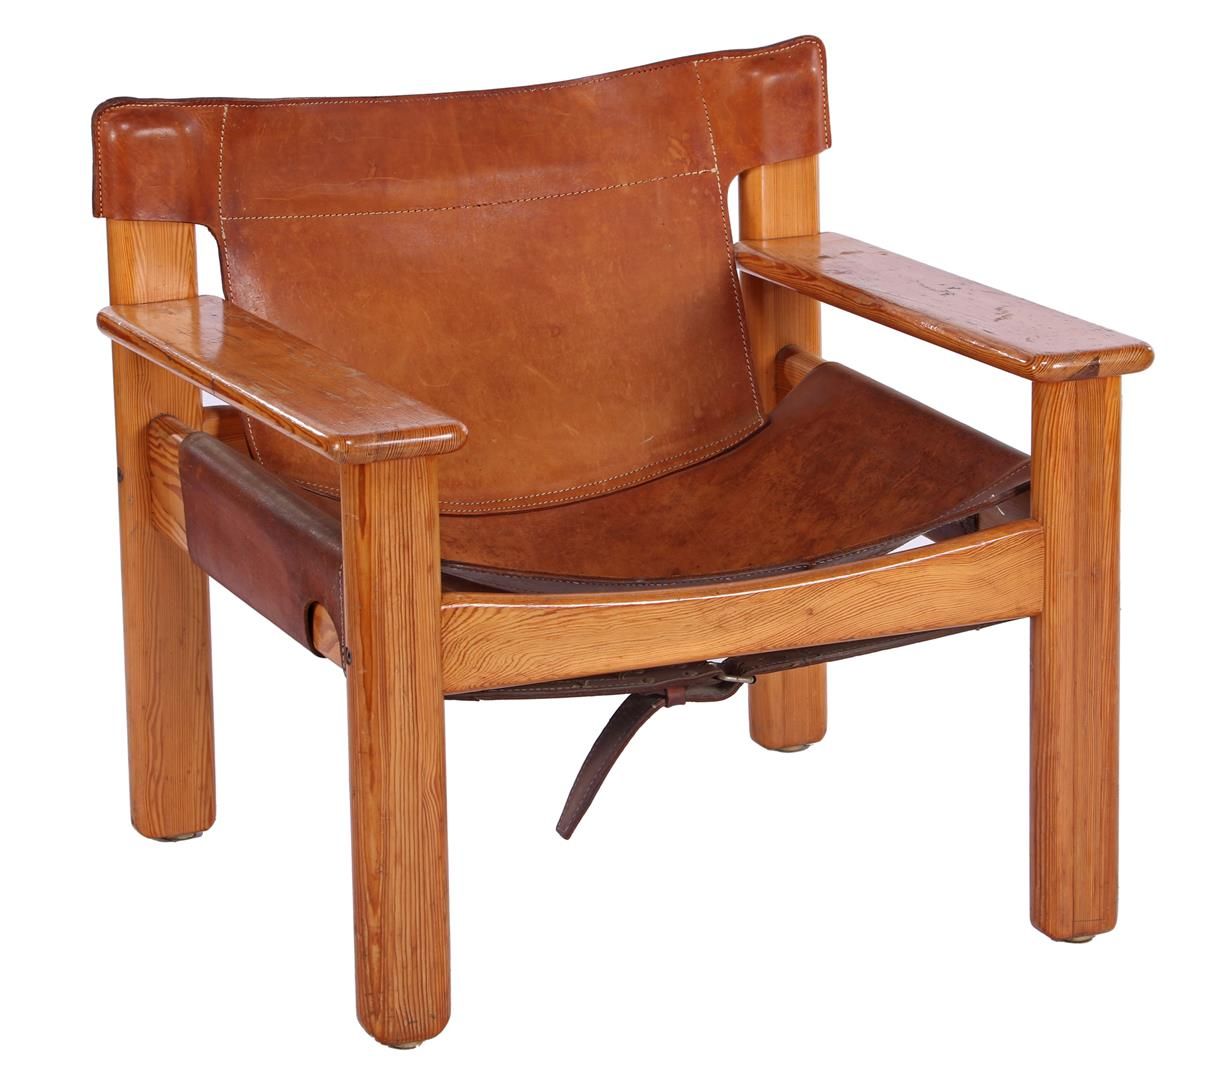 Null 松木扶手椅，配马鞍皮靠背和座椅，Karin Möbring 设计，宜家家居制造，型号 "Natura"，瑞典，1970 年代。靠背高 69 厘米